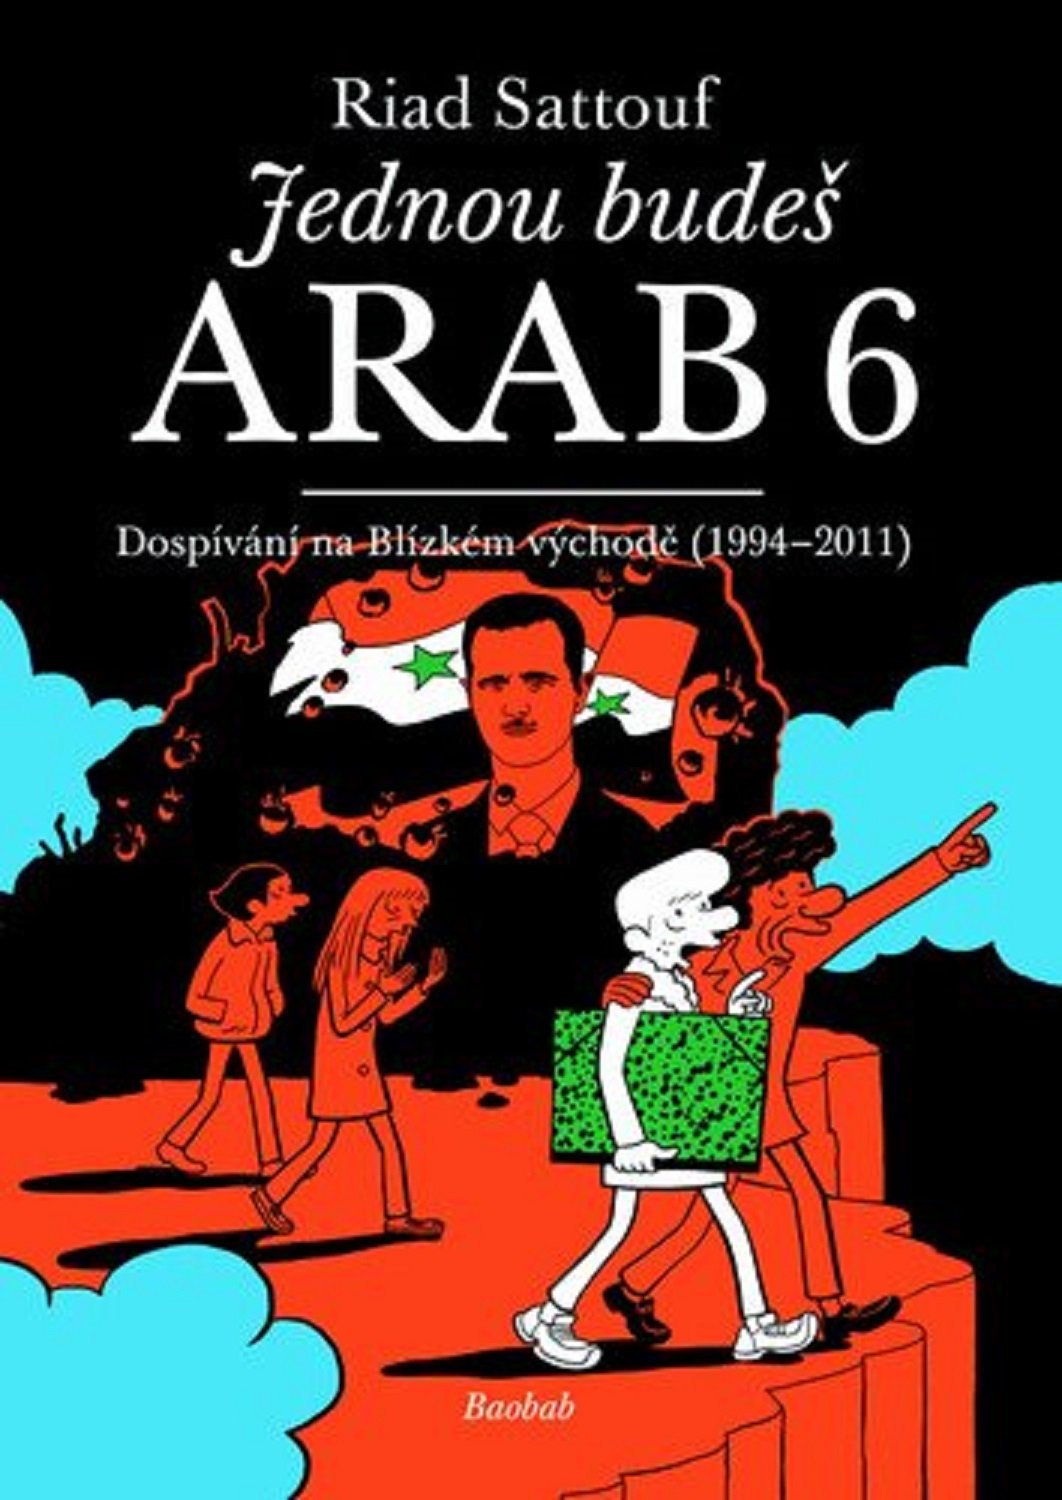 Jednou budeš Arab 6 - Dospívání na Blízkém východě (1994-2011) - Riad Sattouf